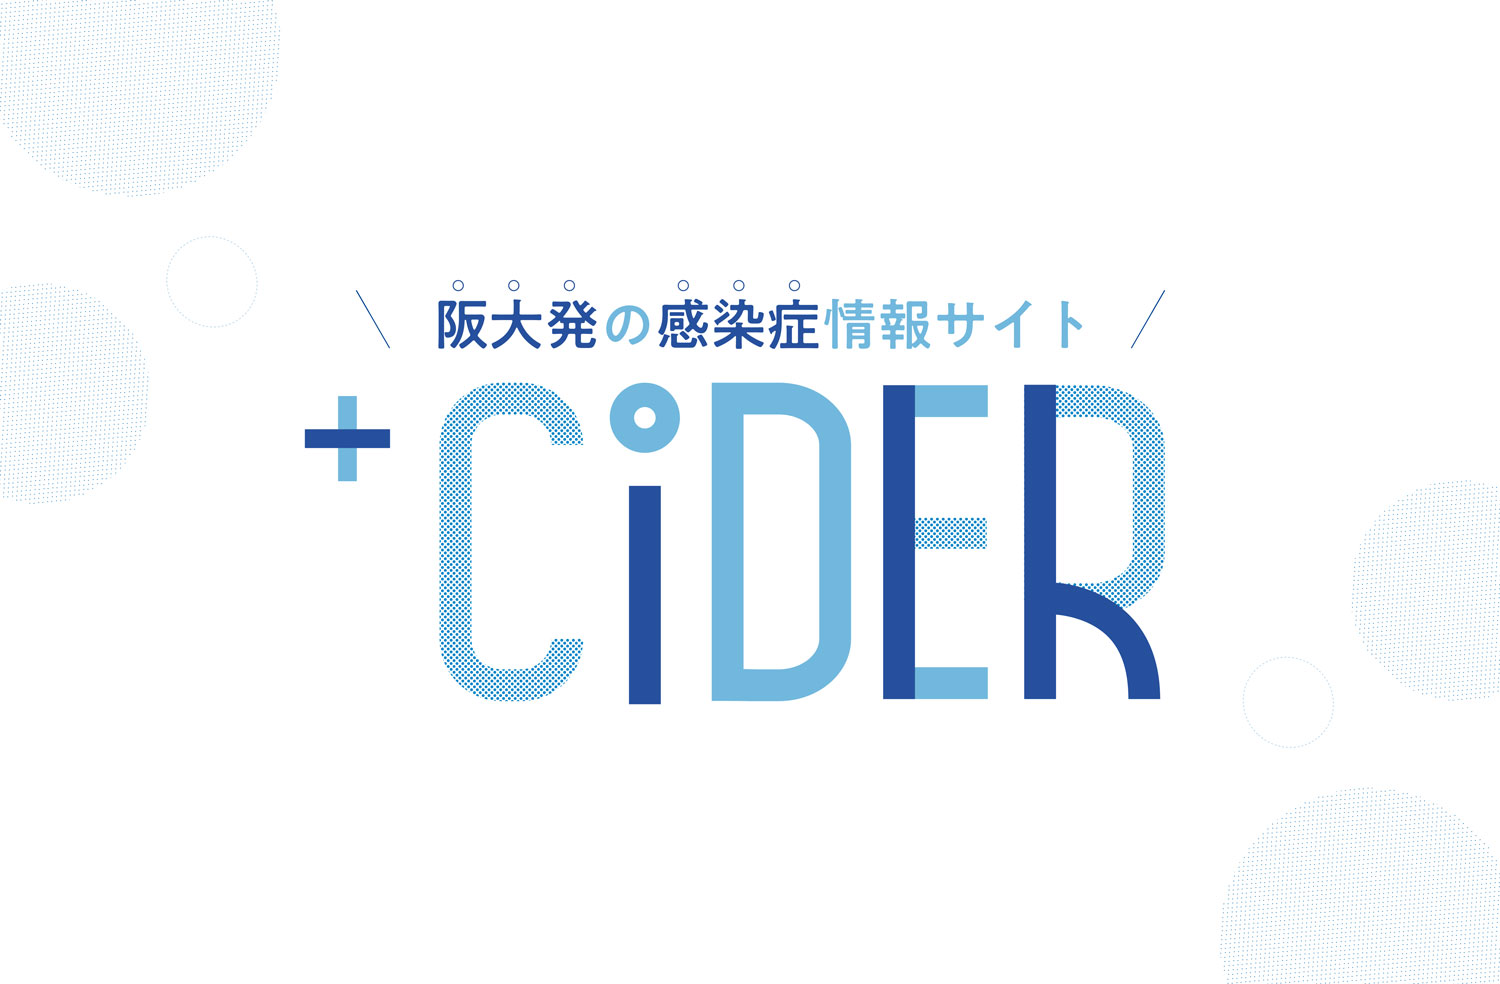 プラスサイダー Cider大阪大学感染症総合教育研究拠点の情報発信サイト